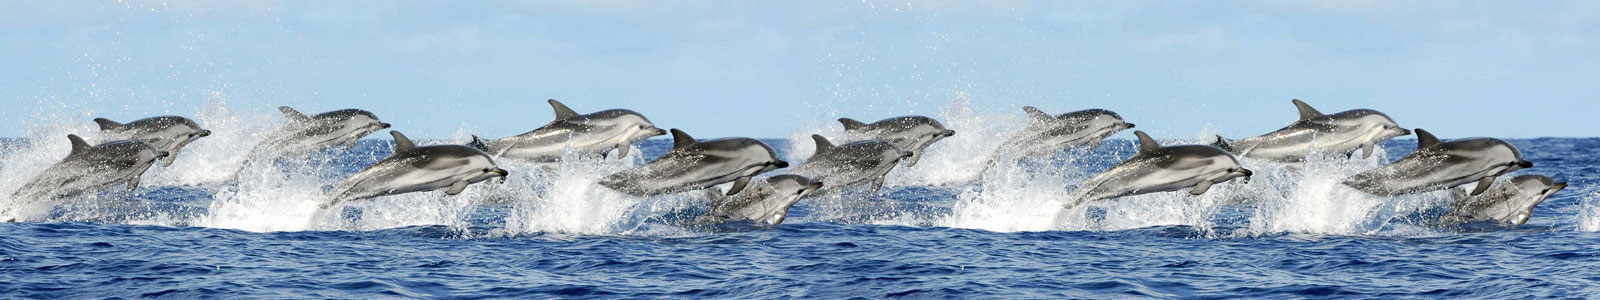 №4346 - Стая прыгающих дельфинов